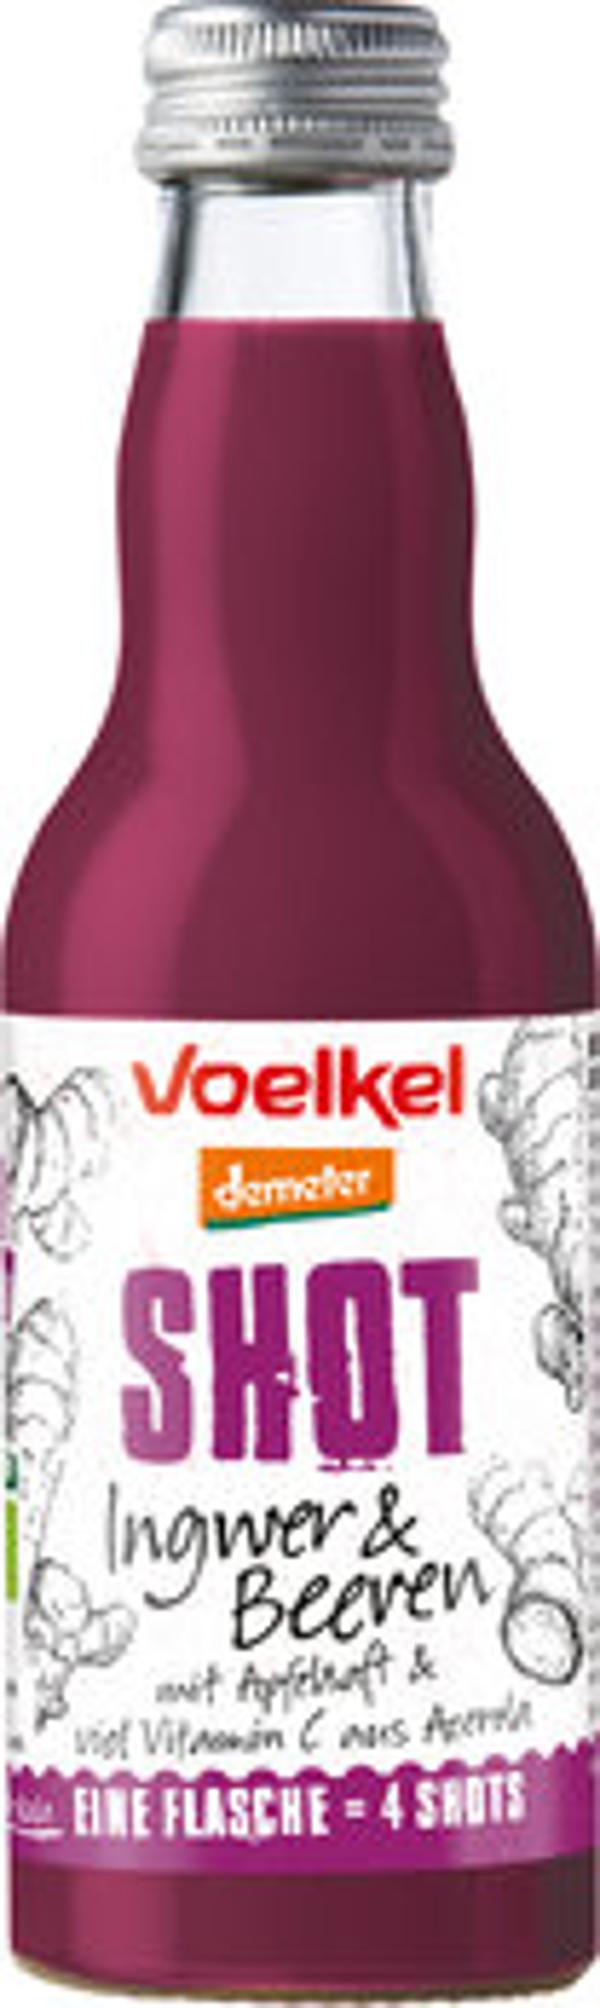 Produktbild von Voelkel Shot Ingwer & Beeren 0,2l